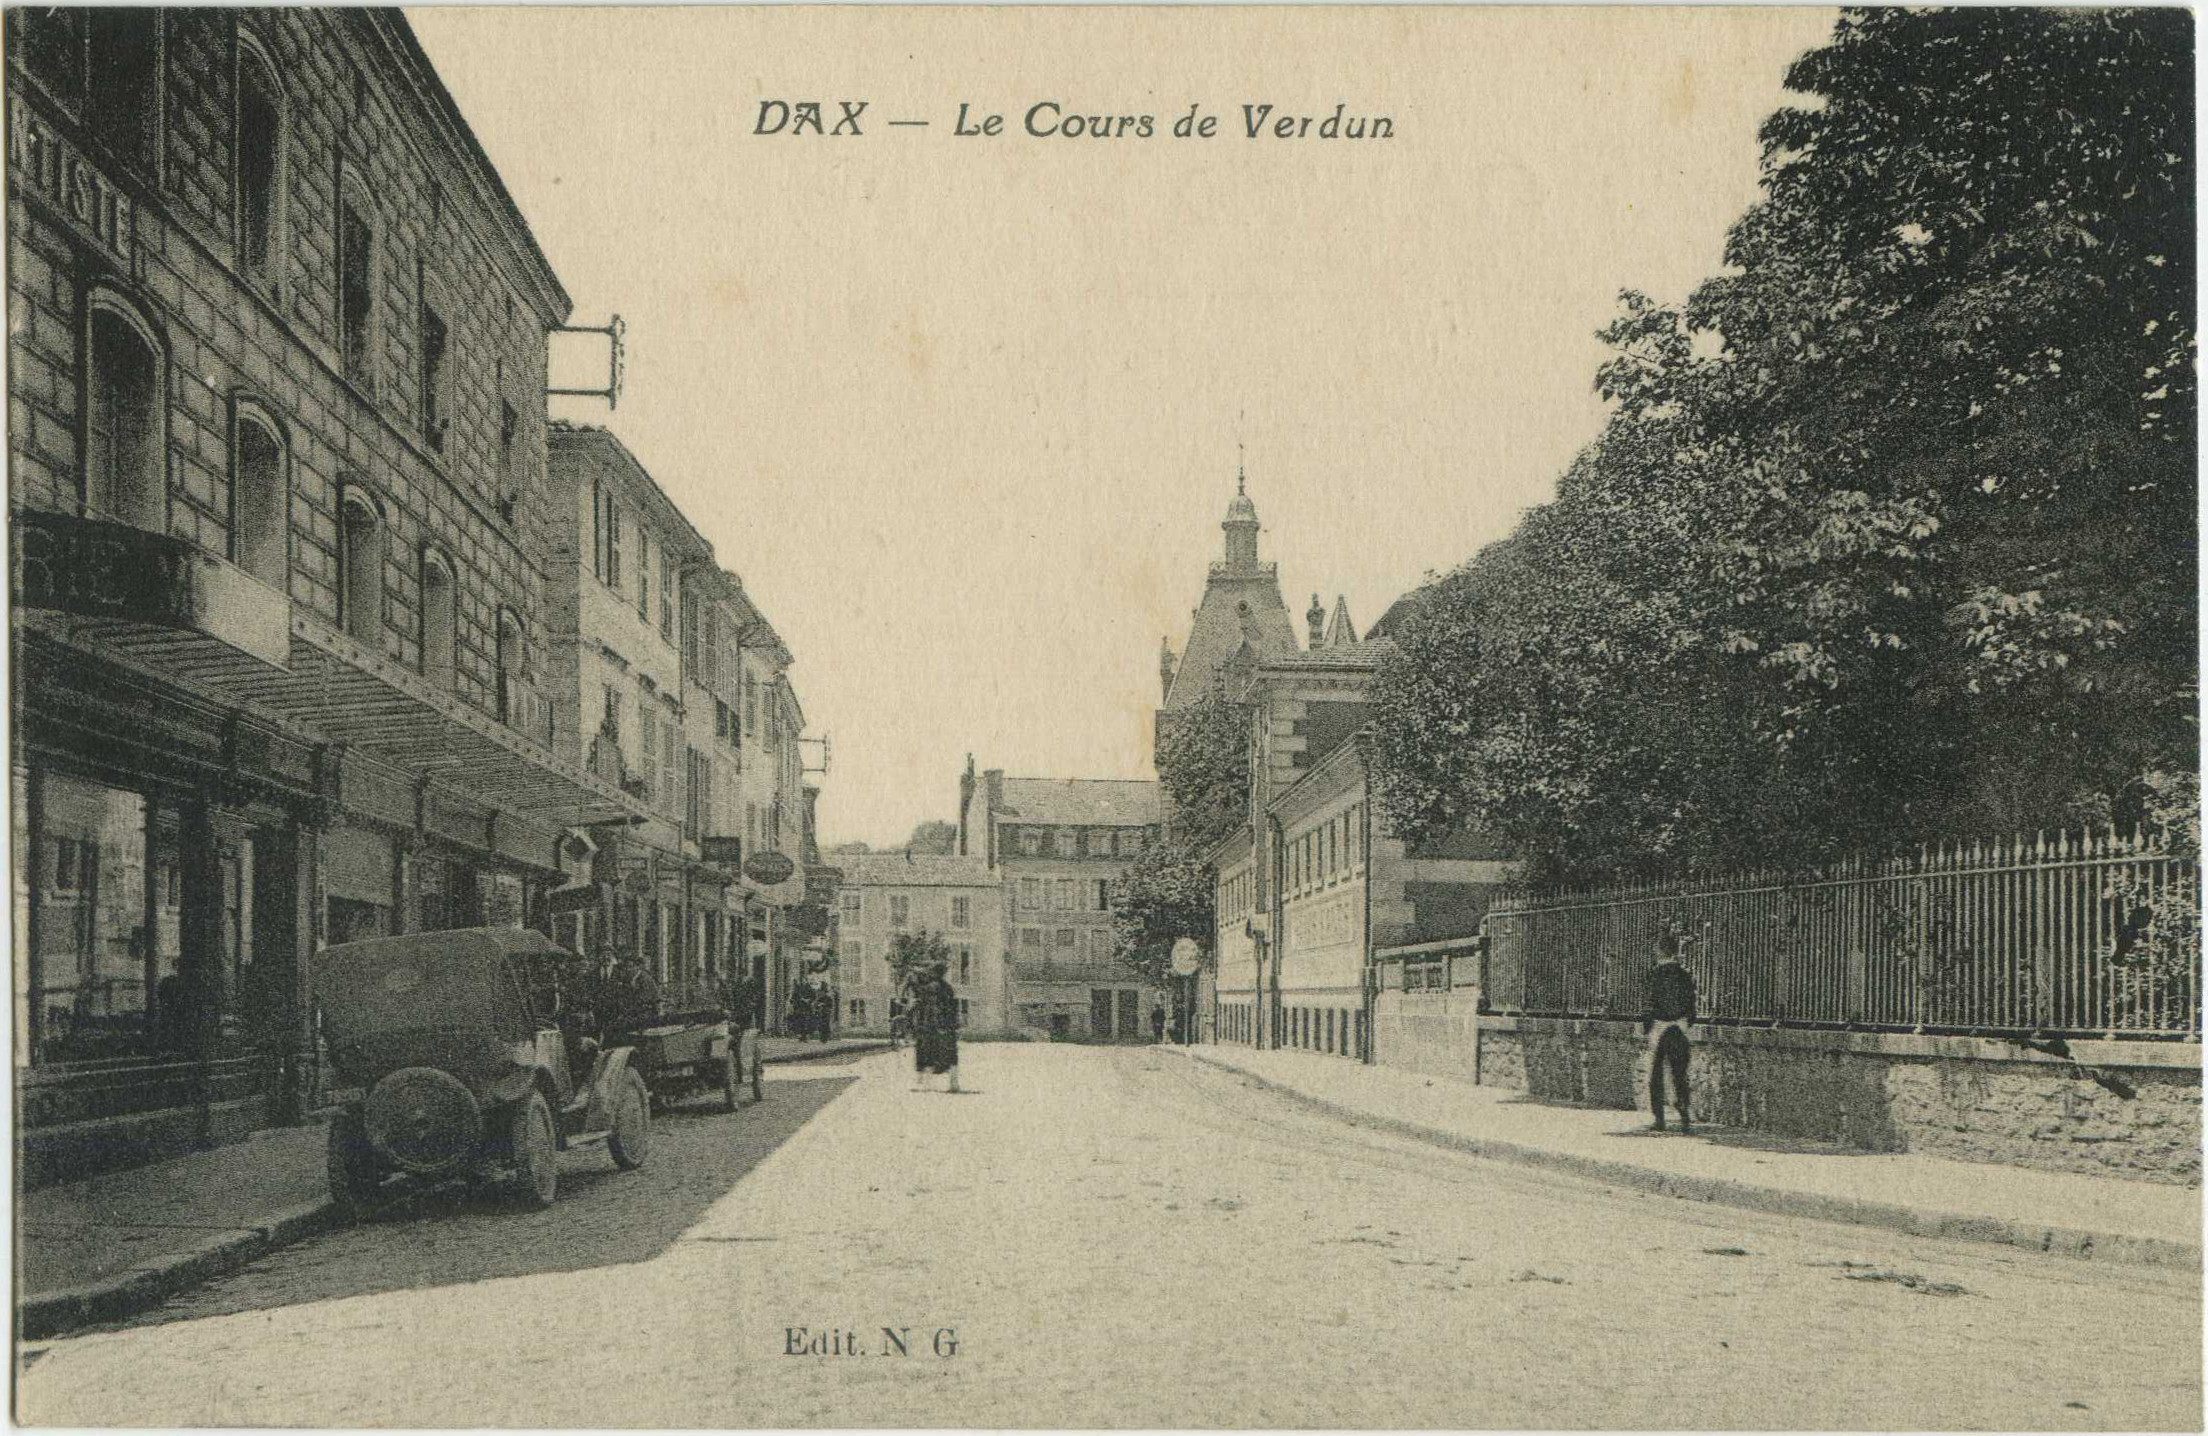 Dax - Le Cours de Verdun